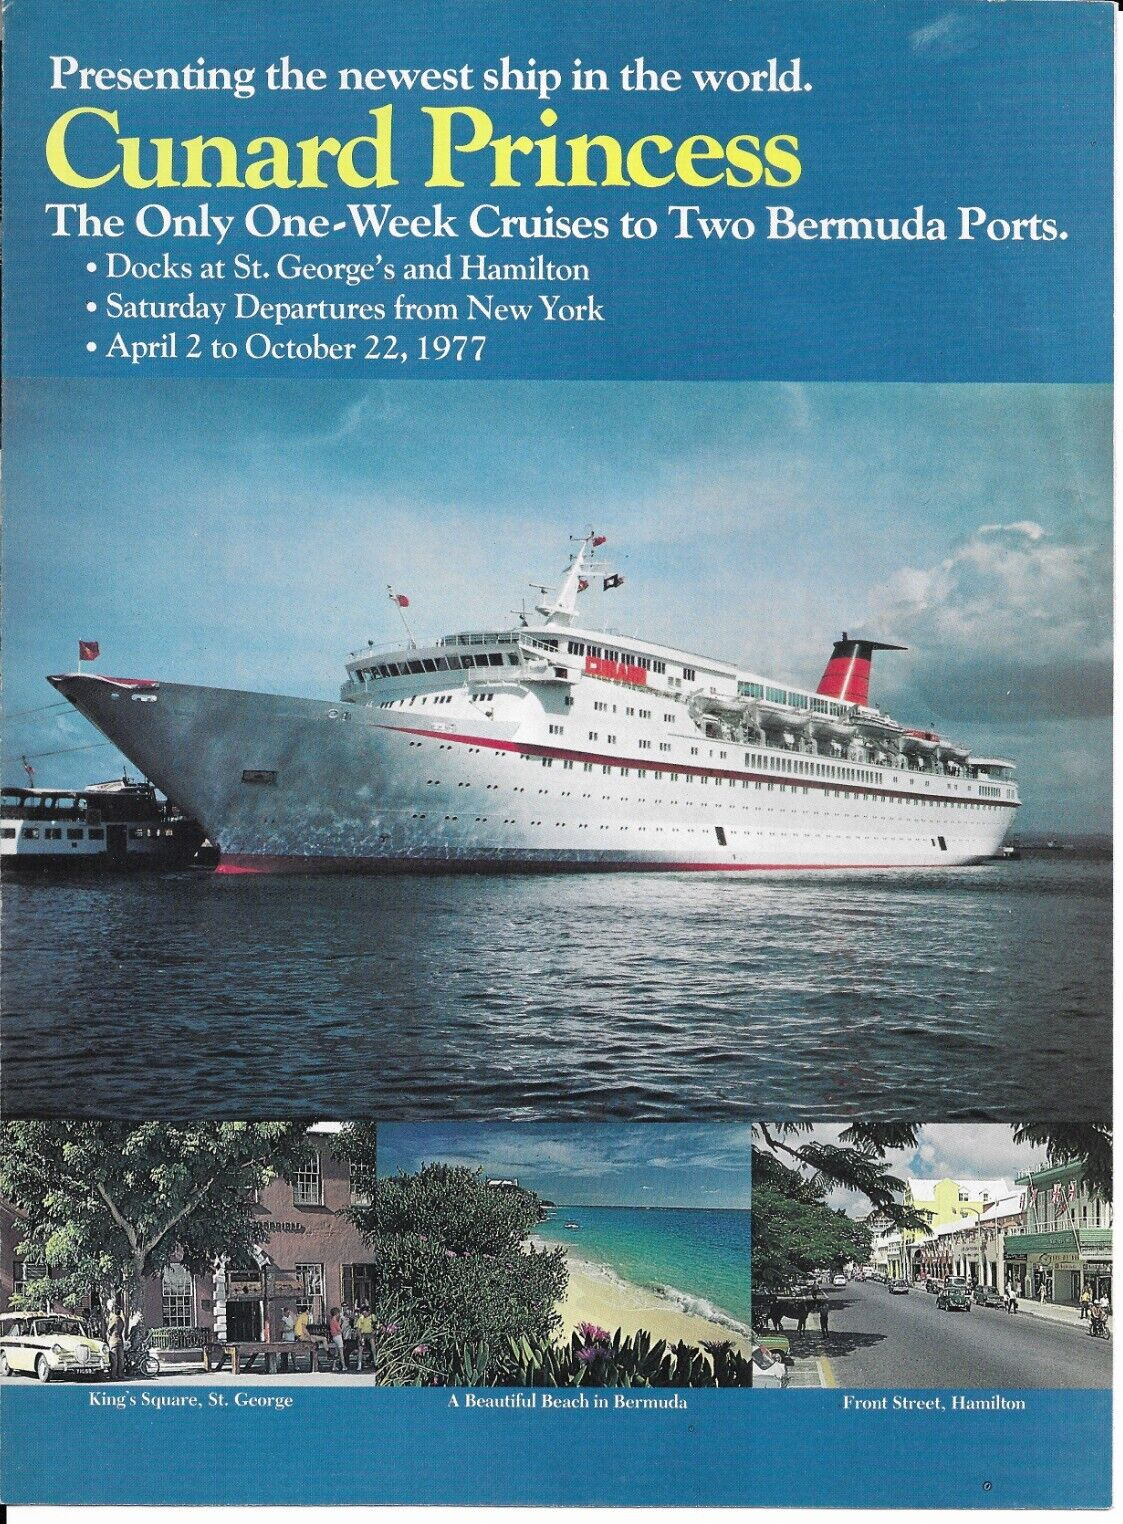 Cunard Line Princess Cruise Bermuda Advertisement April 2- October 22, 1977